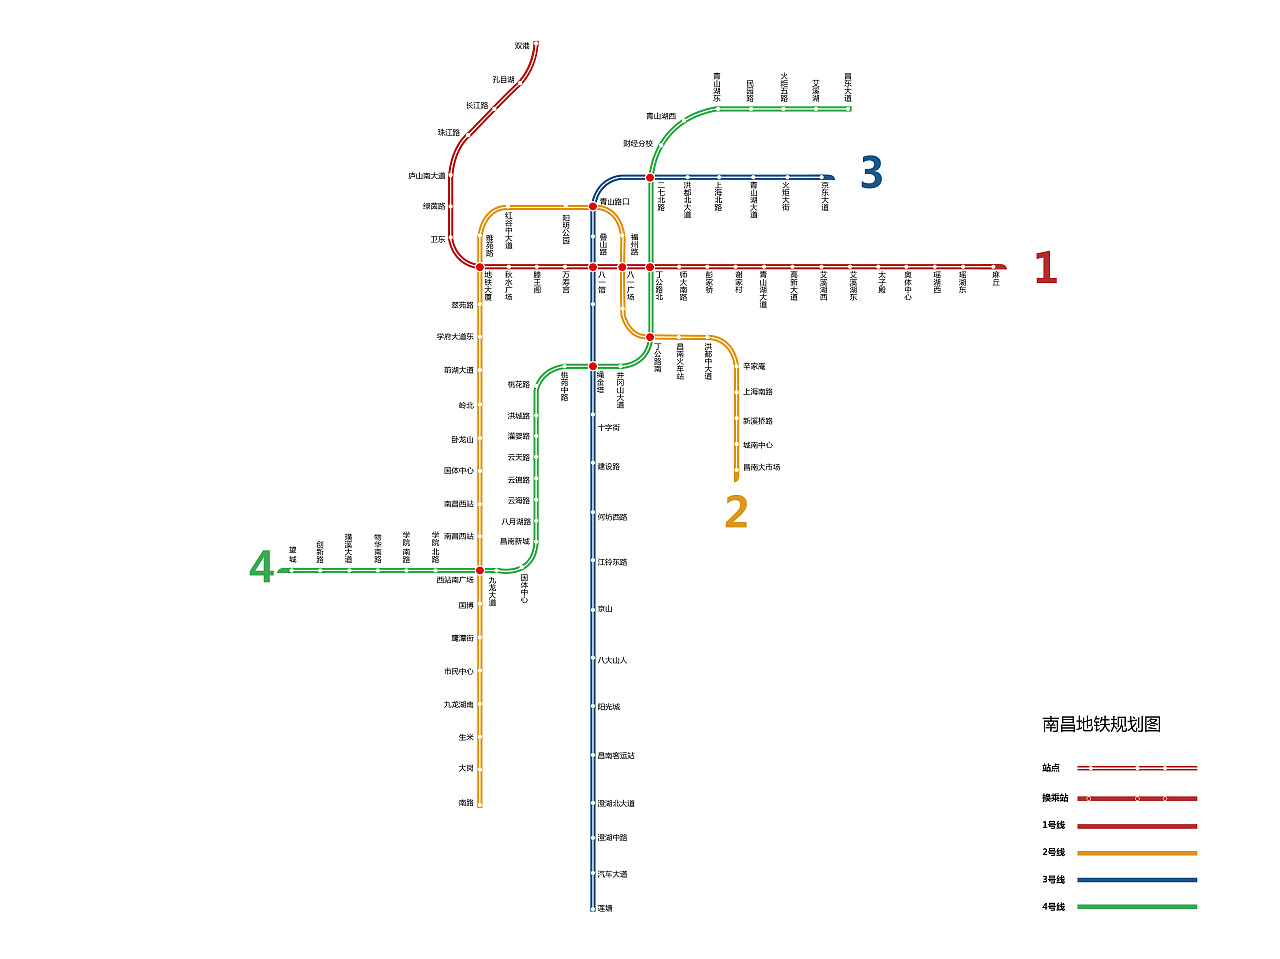 南昌地铁线路图